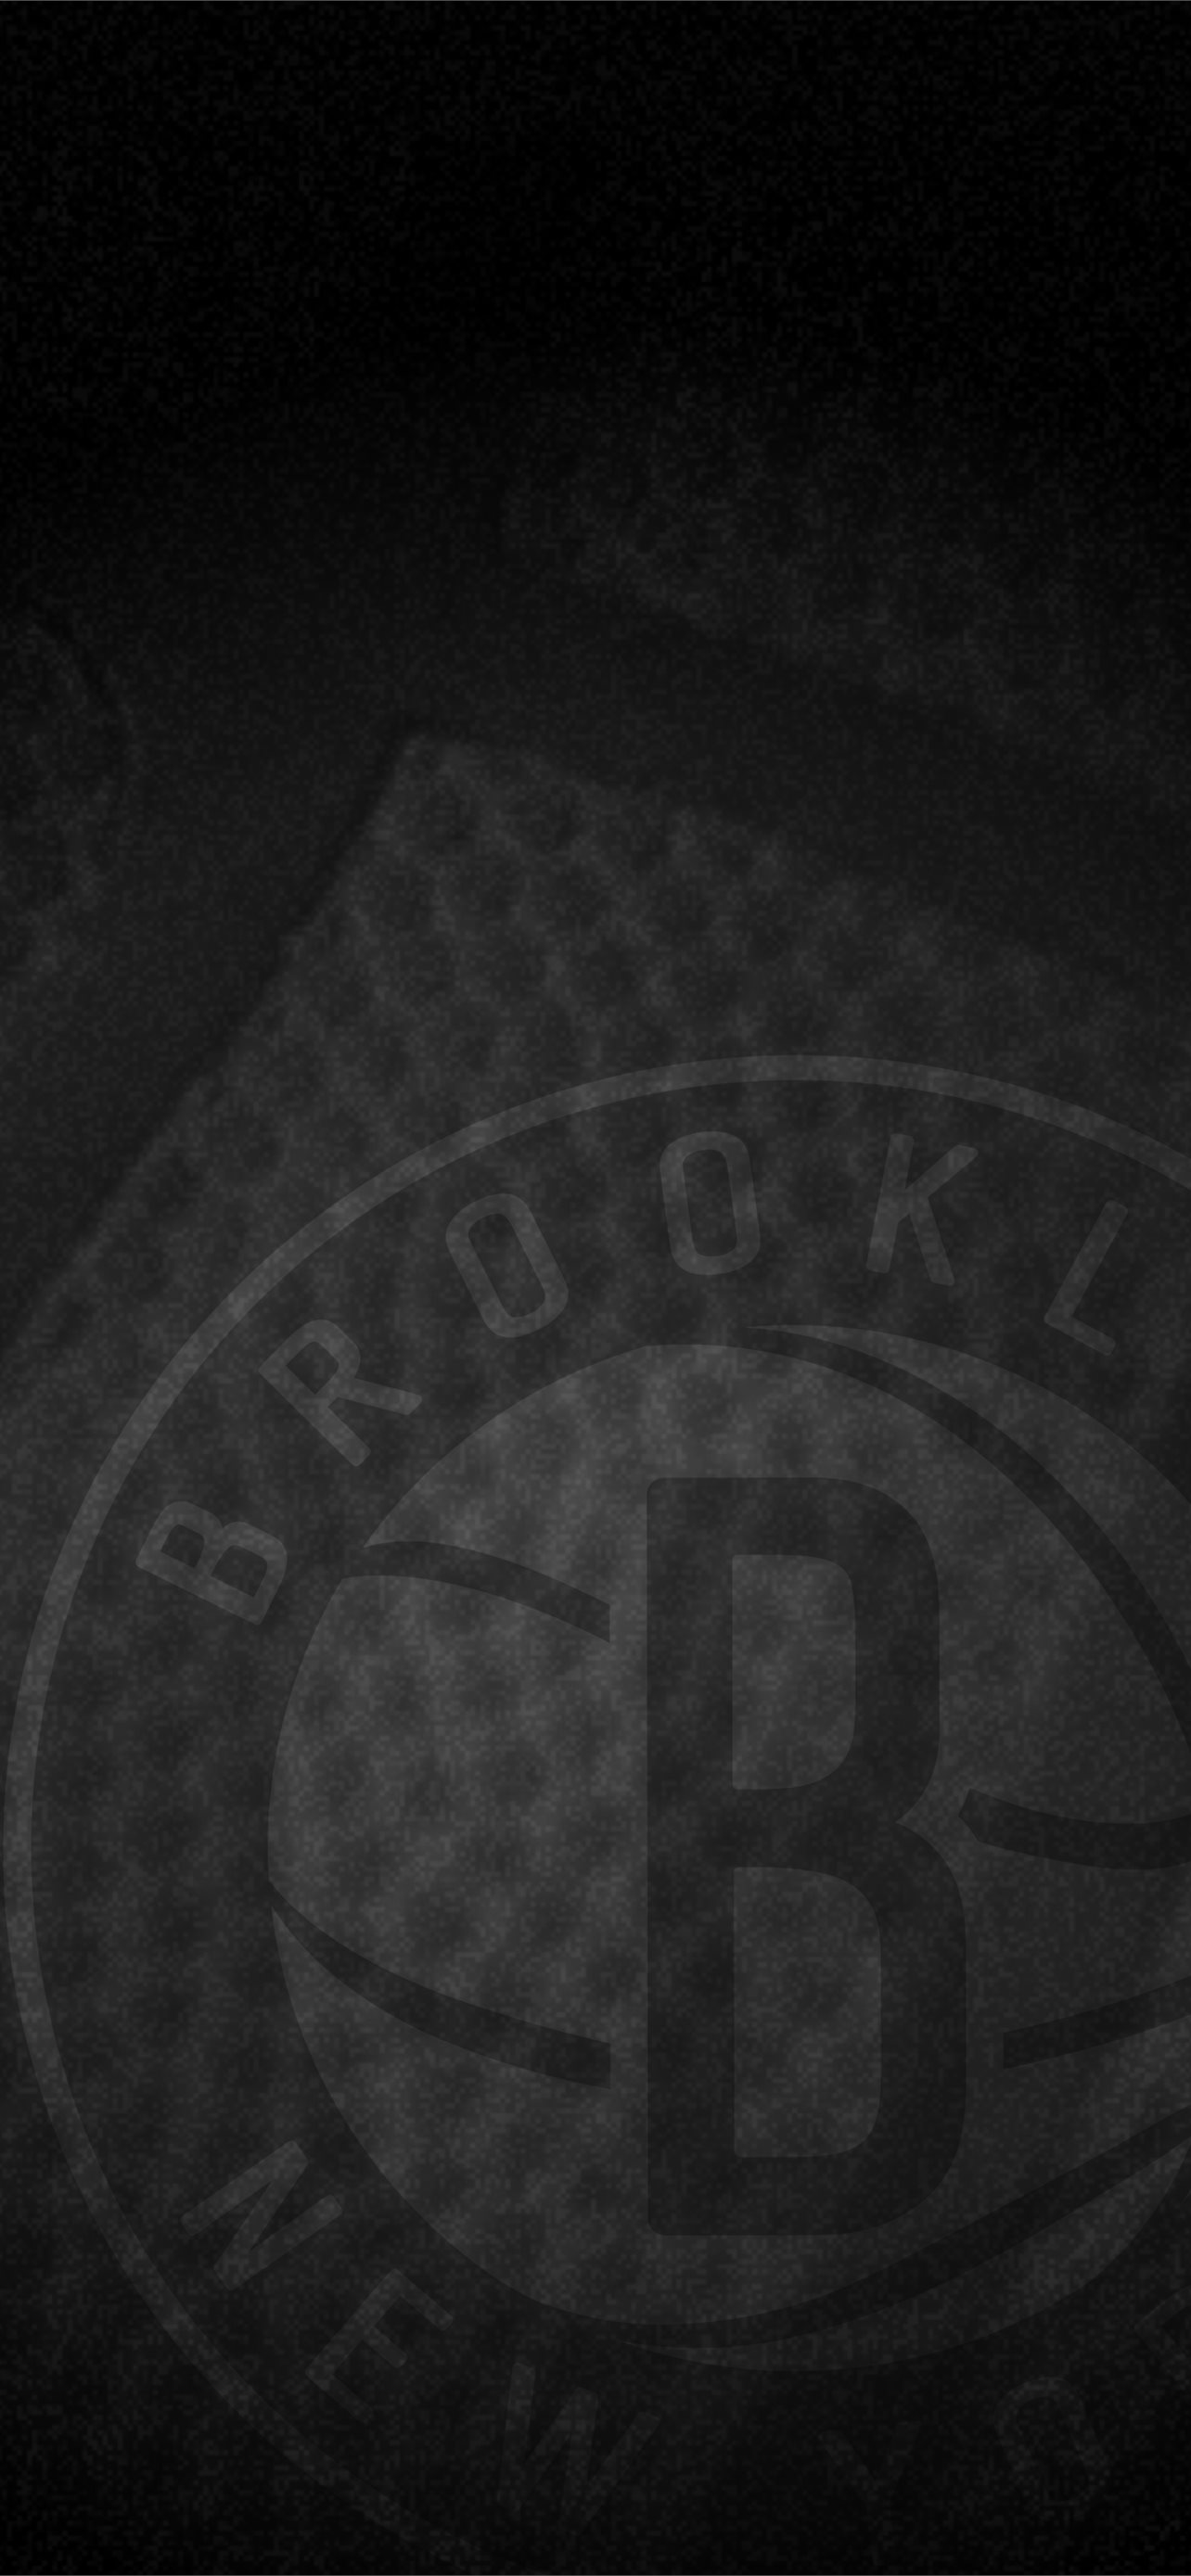 Best Brooklyn nets iPhone HD Wallpapers - iLikeWallpaper